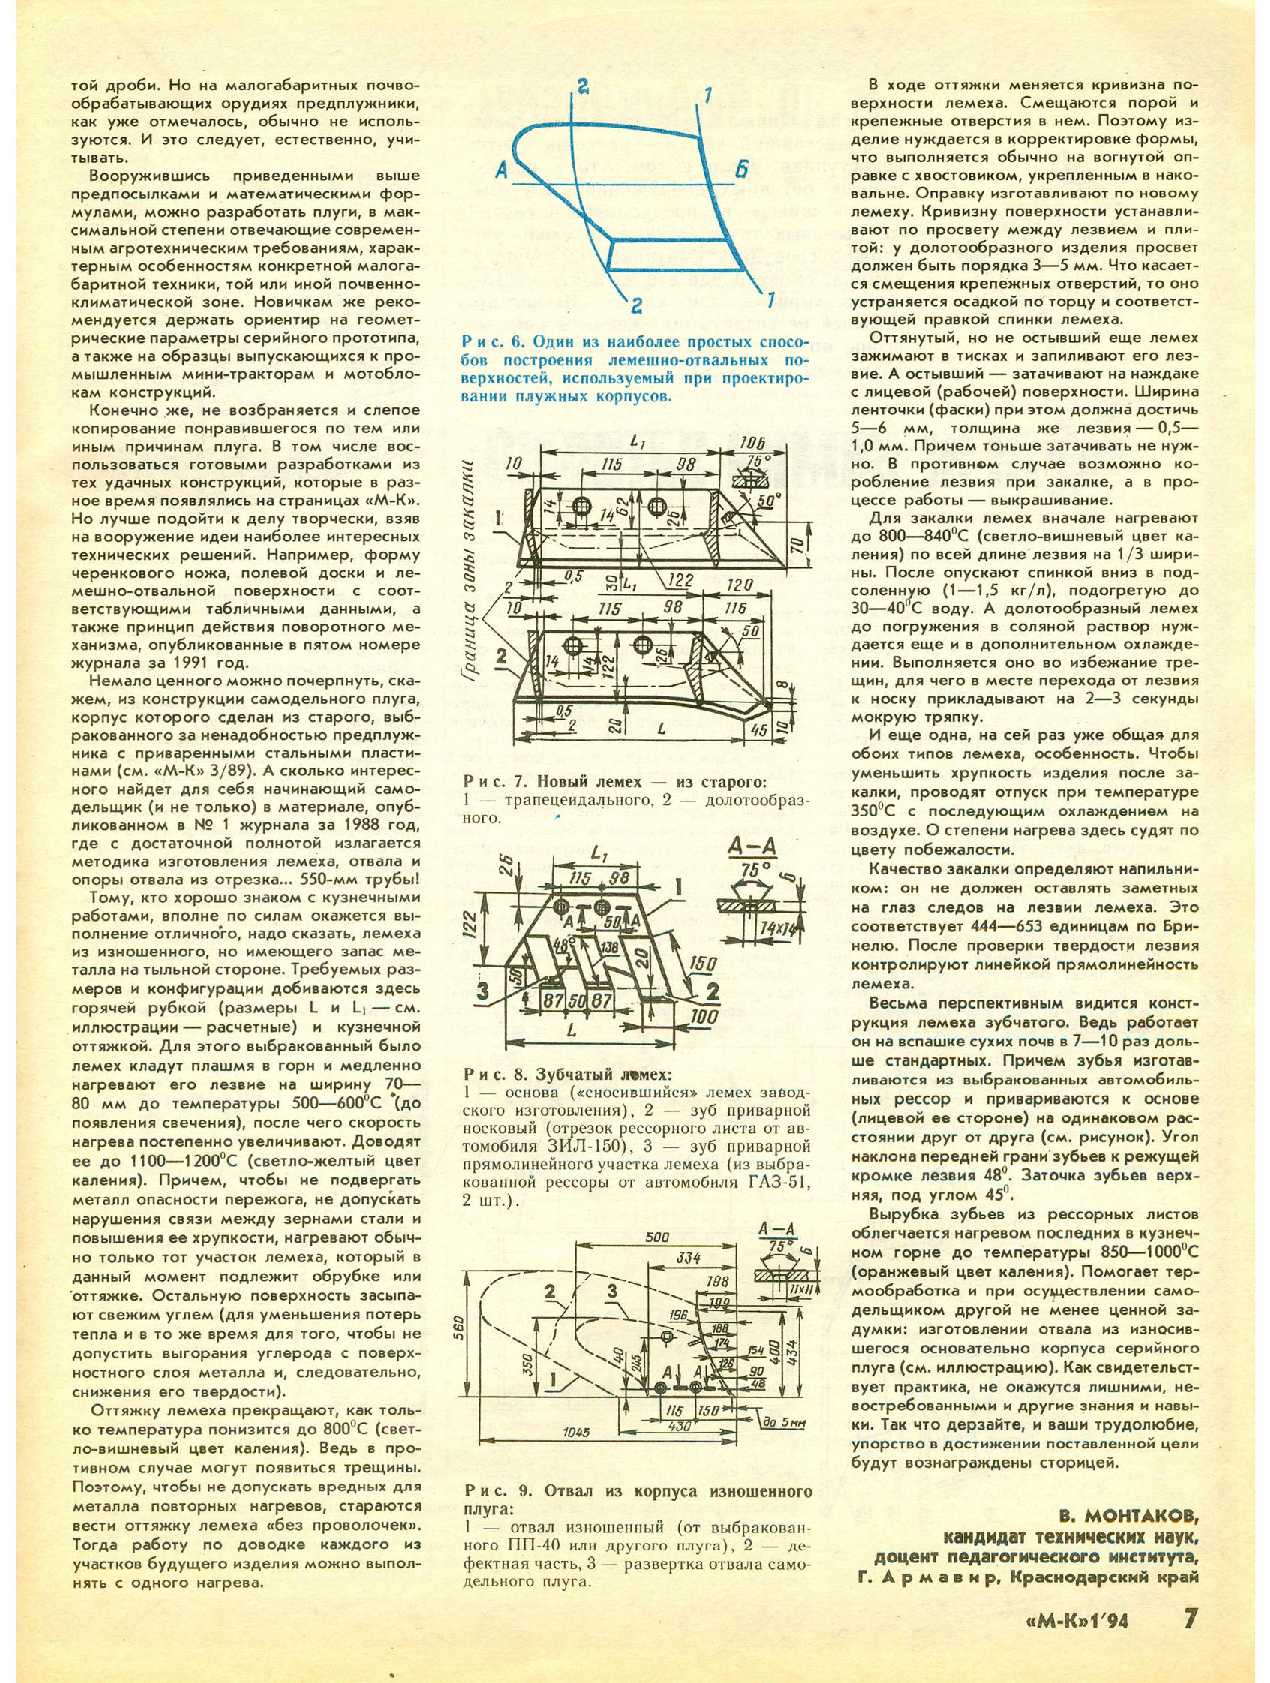 МК 1, 1994, 7 c.